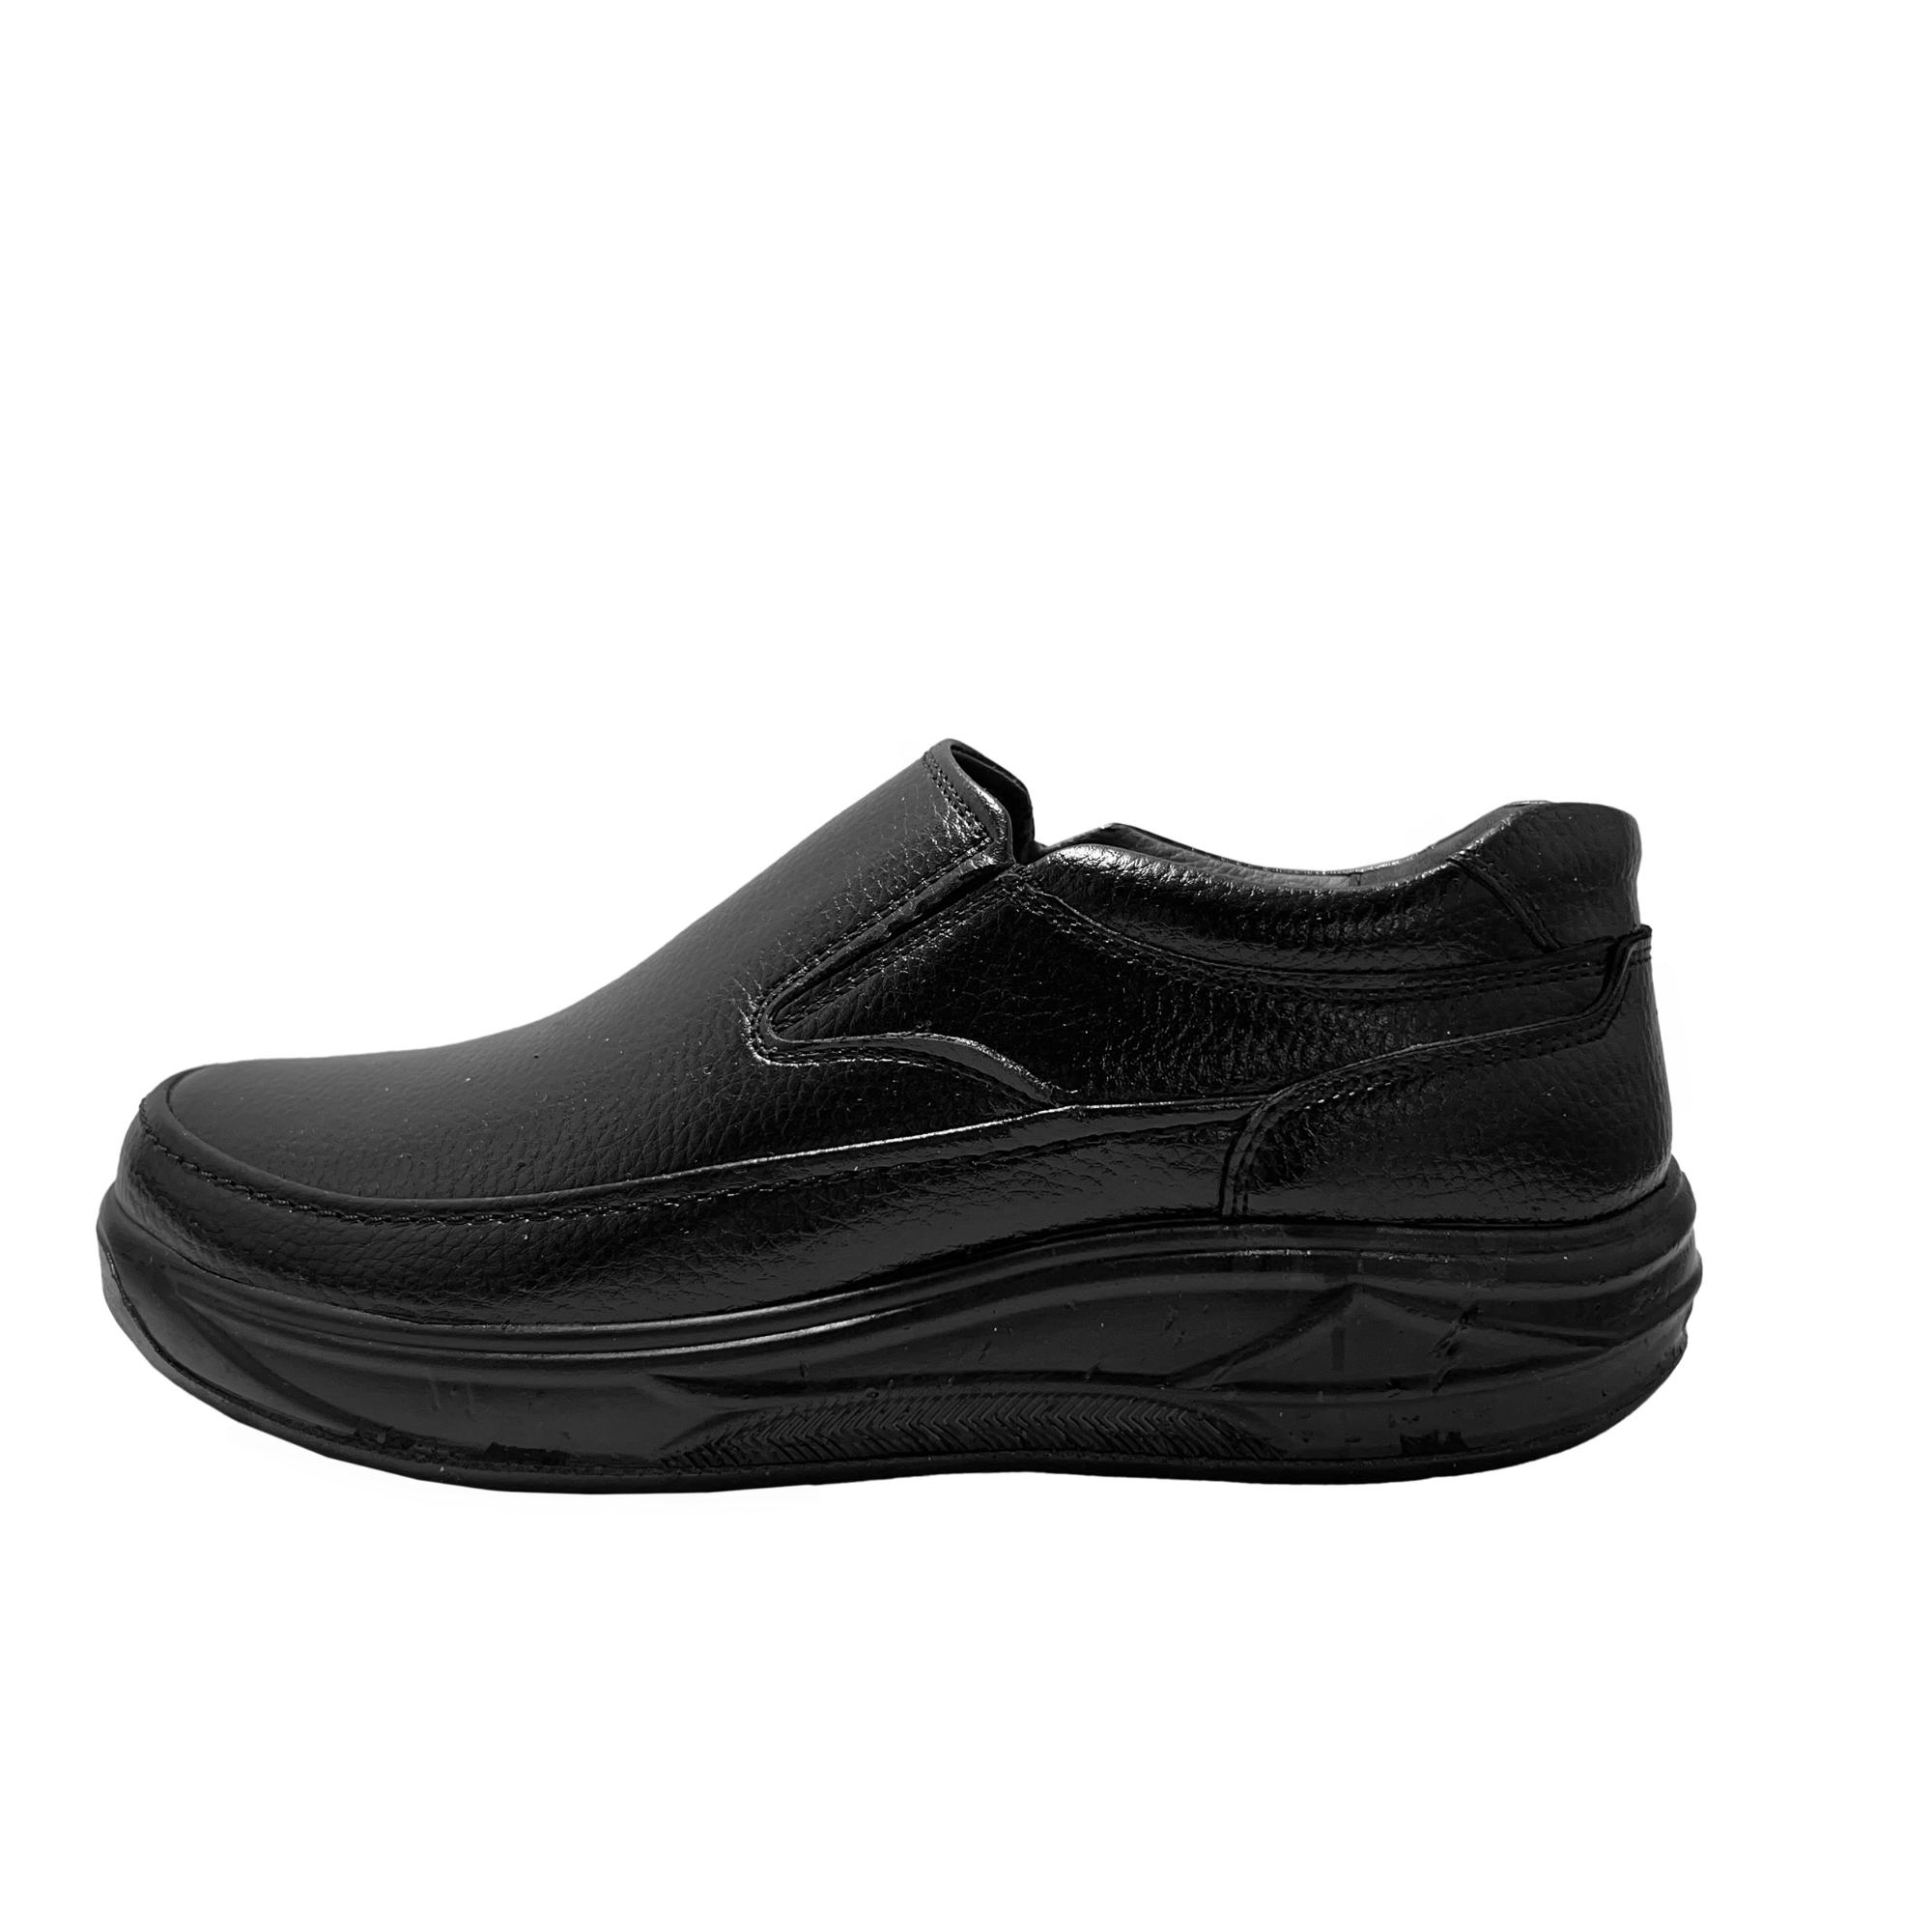 نکته خرید - قیمت روز کفش طبی مردانه مدل sade201 خرید